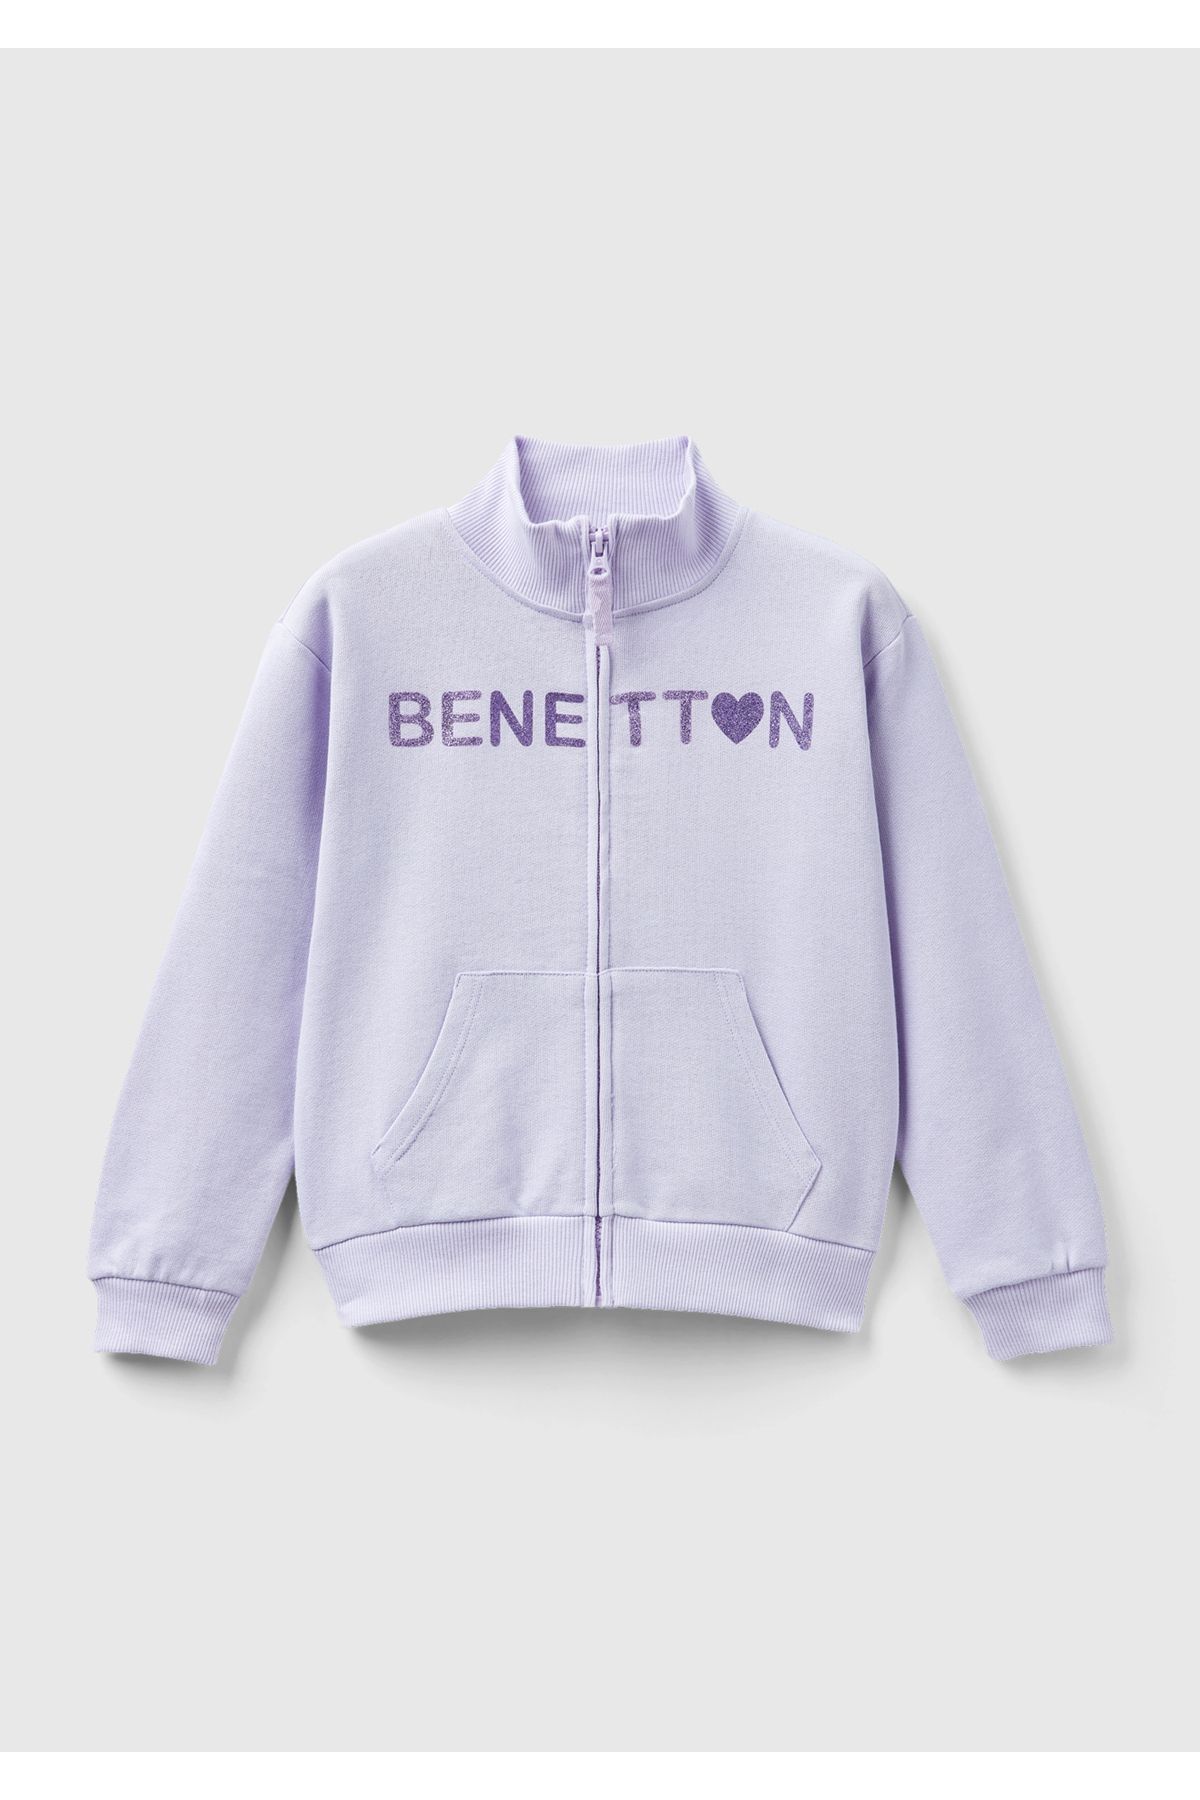 United Colors of Benetton Kız Çocuk Lila Benetton Baskılı Sweatshirt